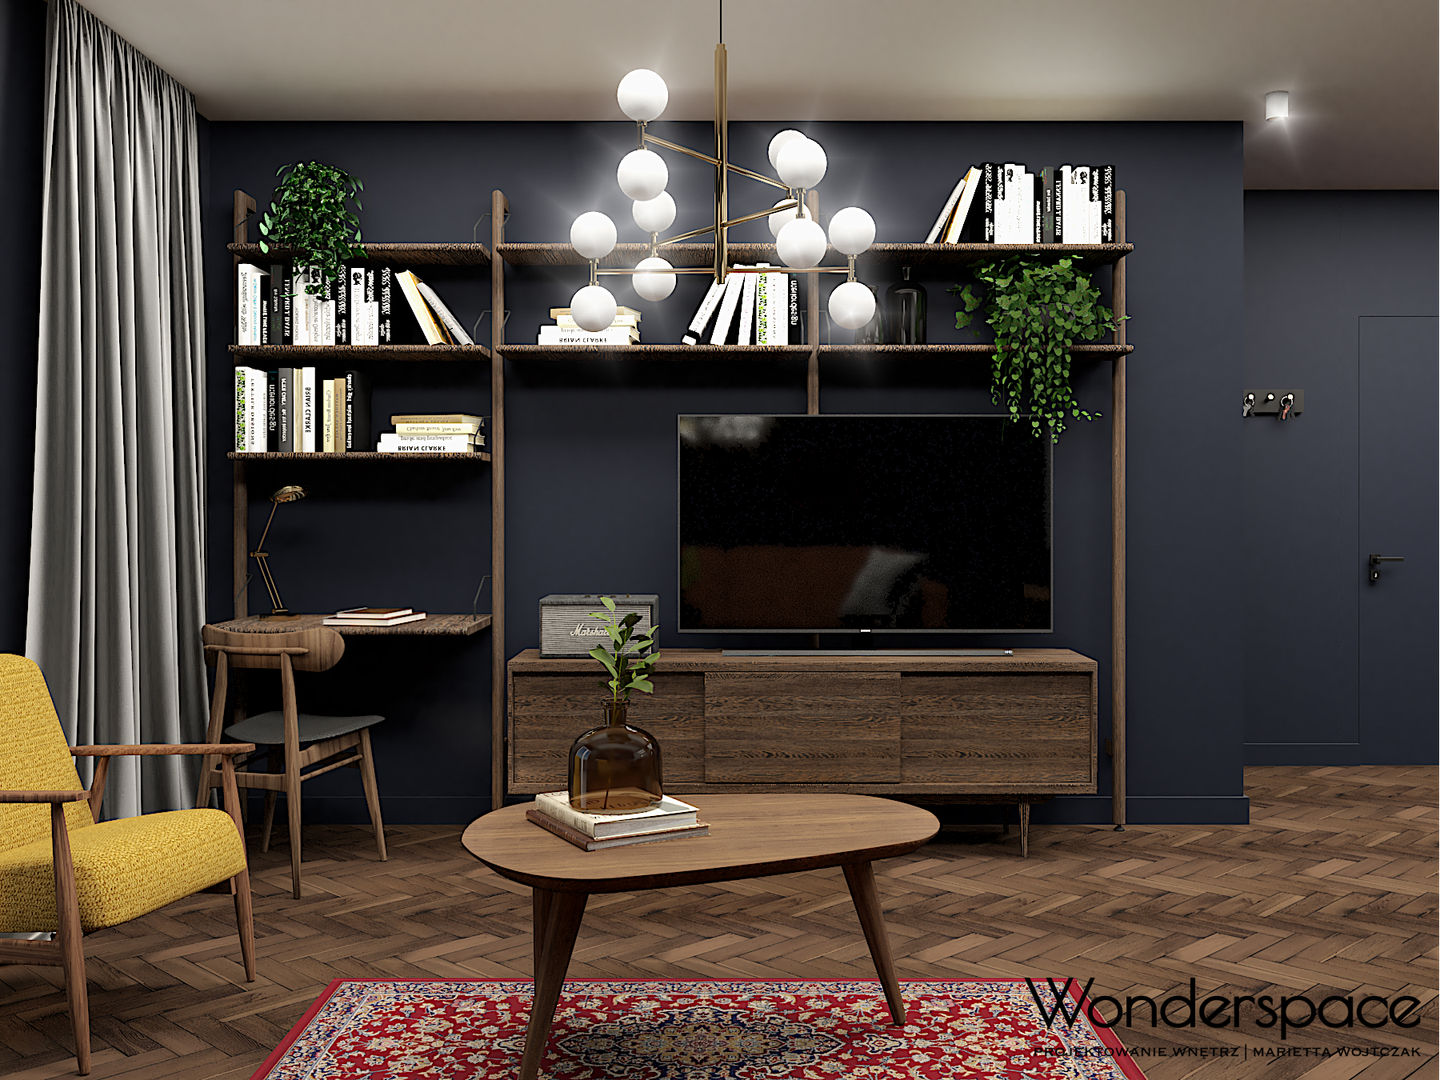 Eklektyczne mieszkanie w Warszawie, Wonderspace Wonderspace Ruang Keluarga Gaya Eklektik